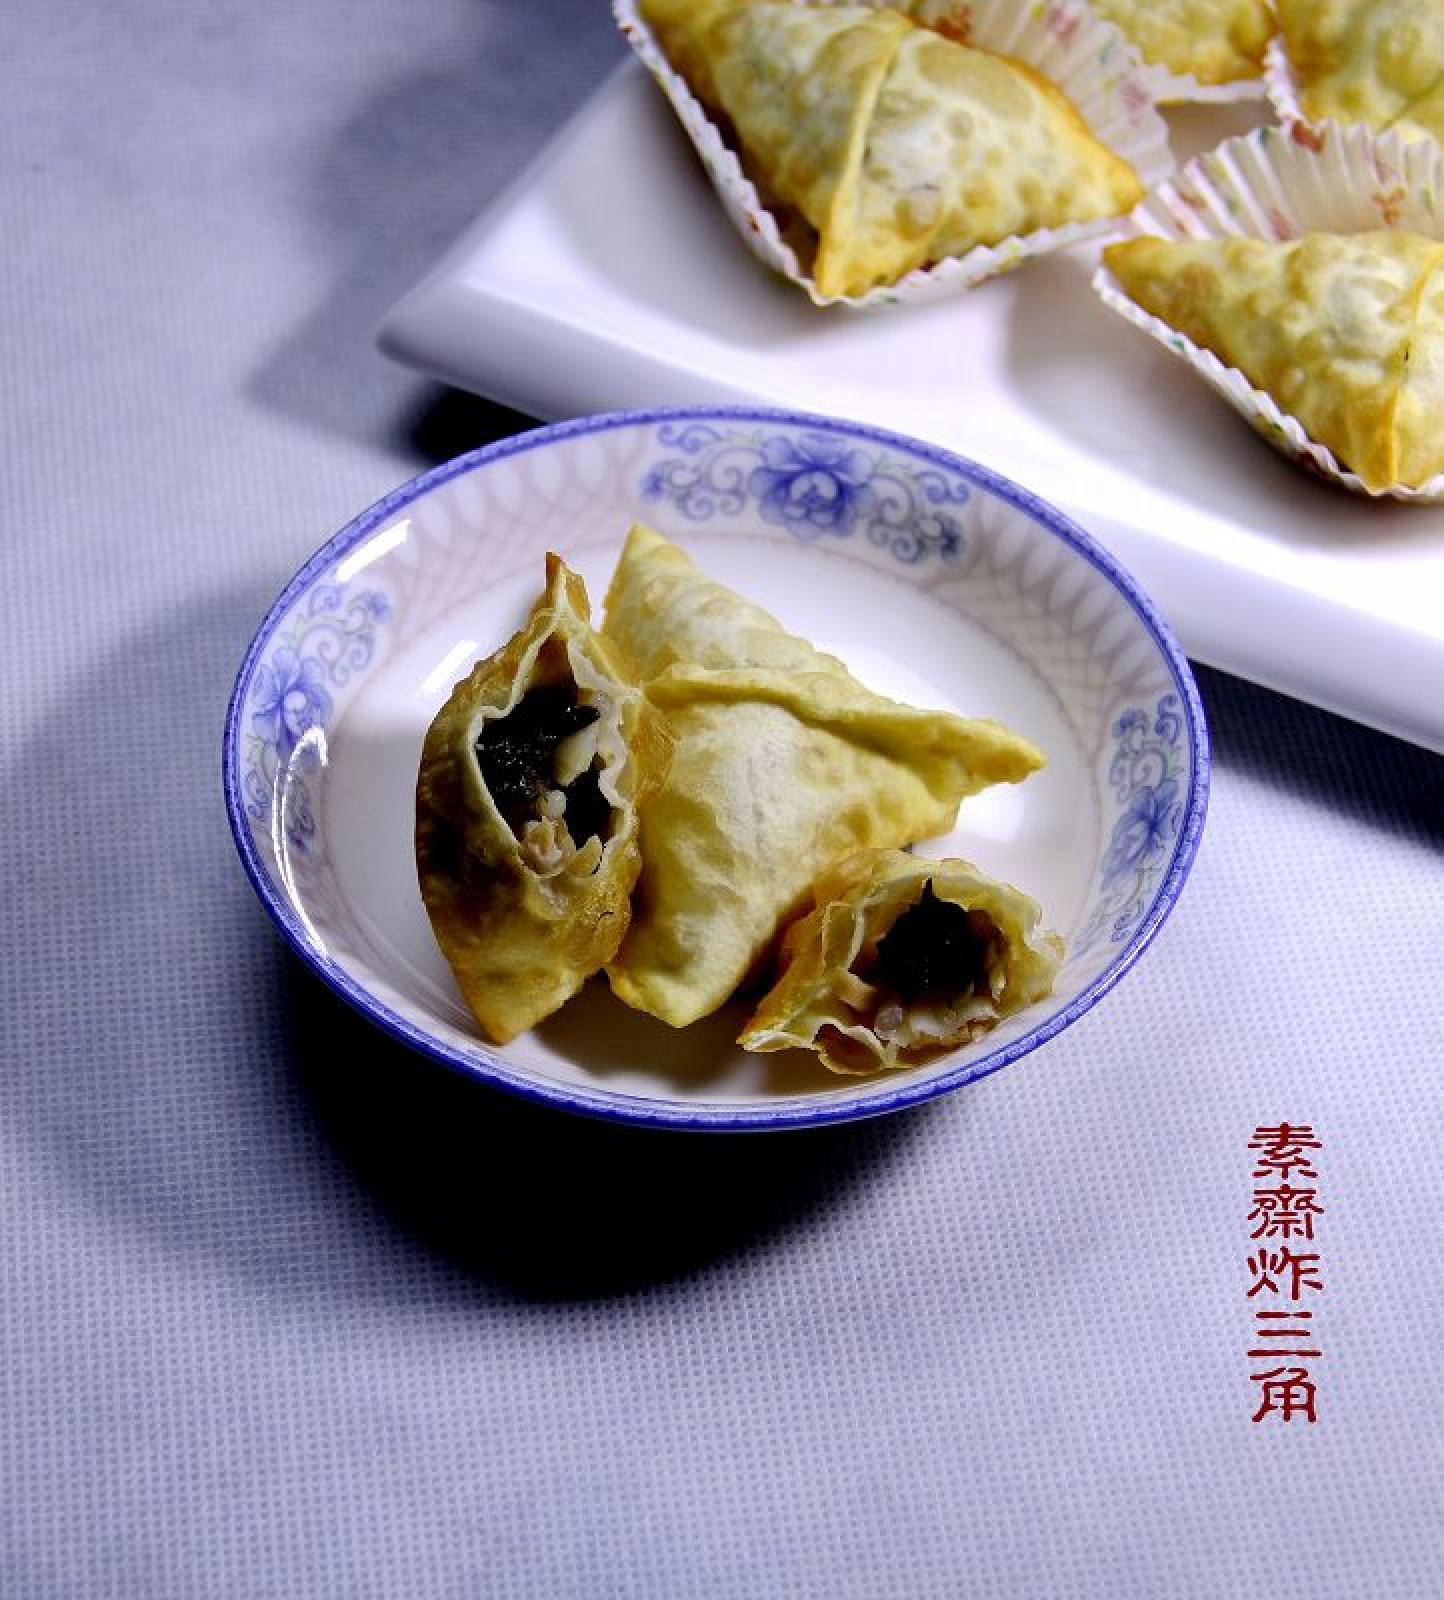 【炸三角】老北京小吃:皮酥脆,馅鲜香